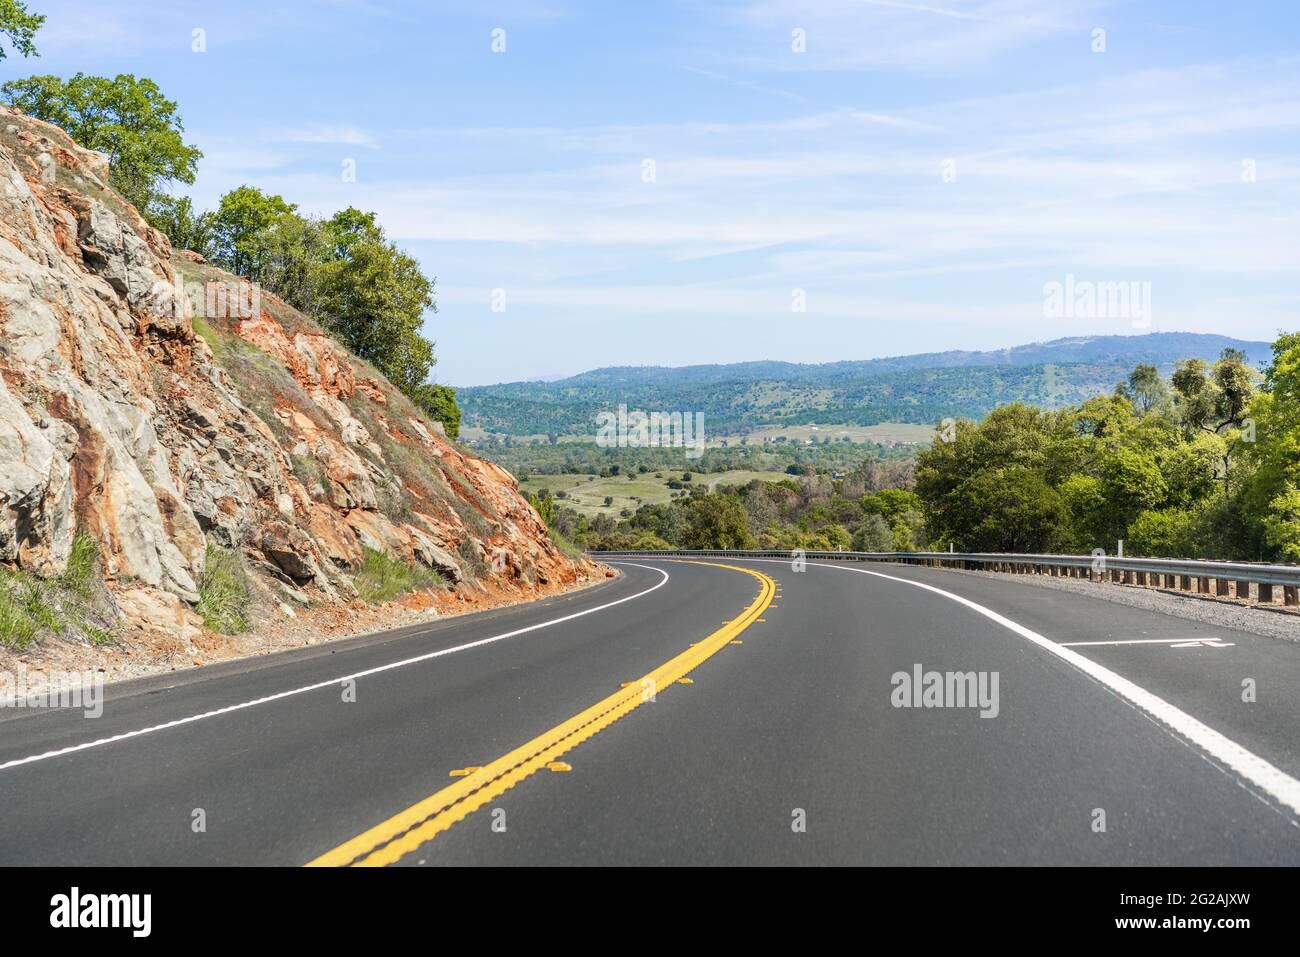 Autopista vacía que atraviesa Sierra Foothills; Condado de Calaveras, California Foto de stock